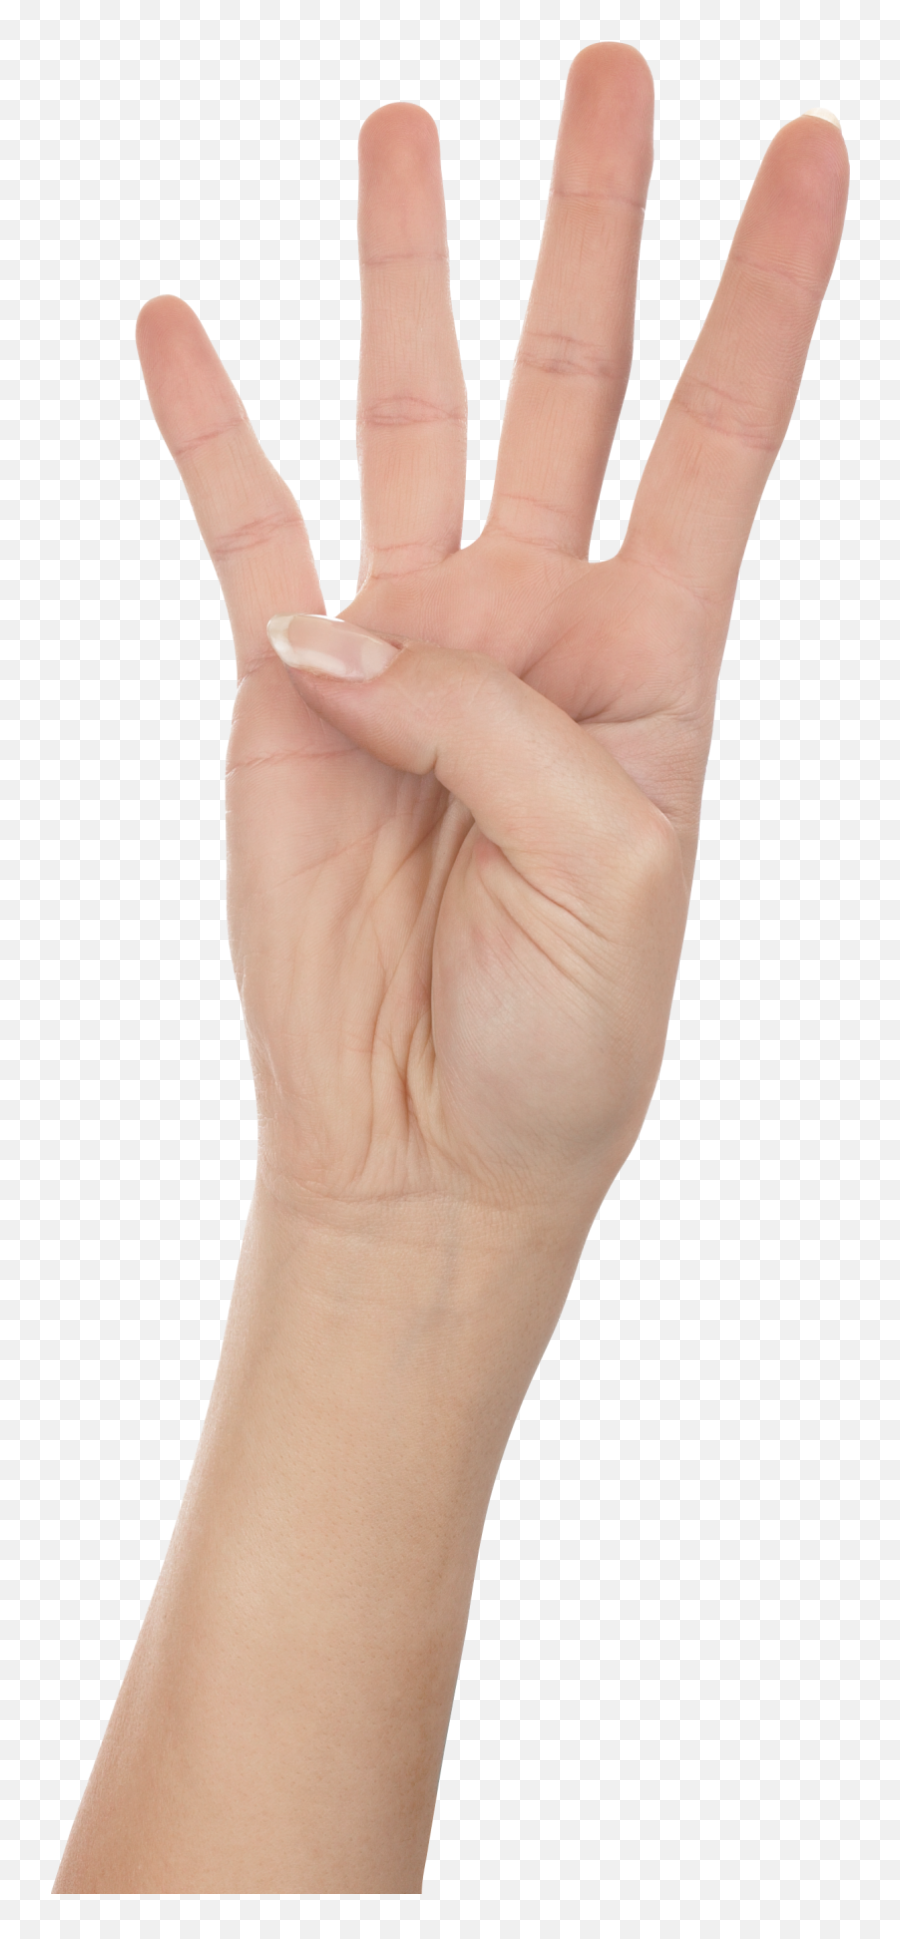 Four Finger Hand Png Image - Fingers Transparent Background,Finger Transparent